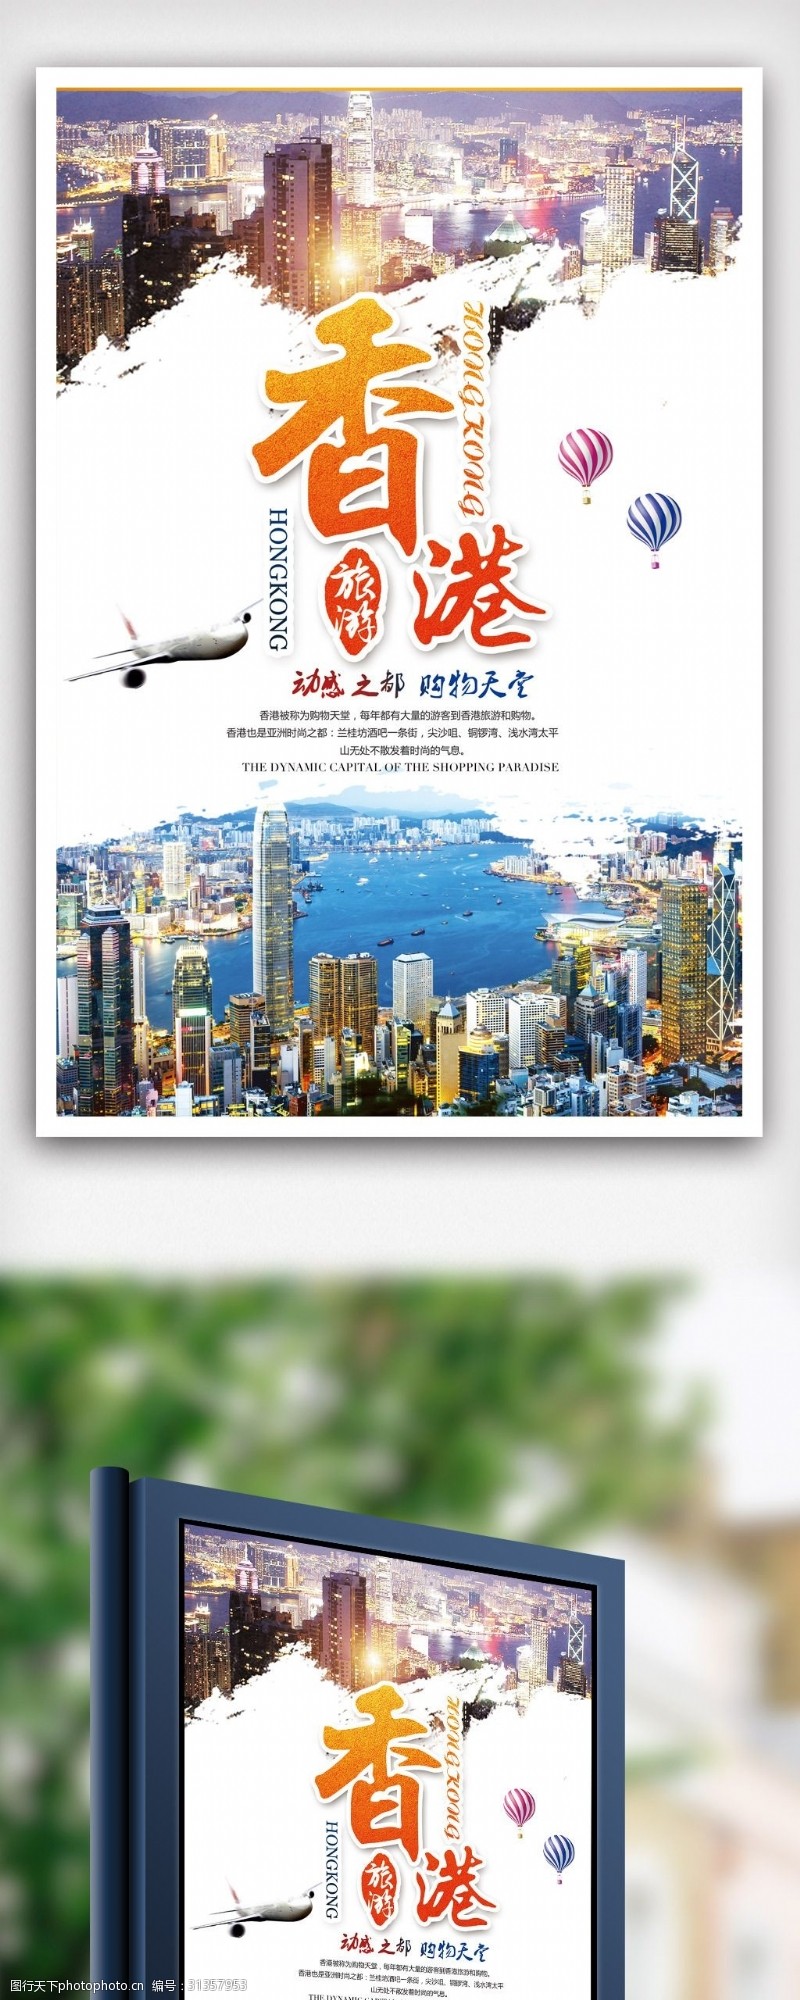 自助购物香港旅游休闲娱乐海报.psd